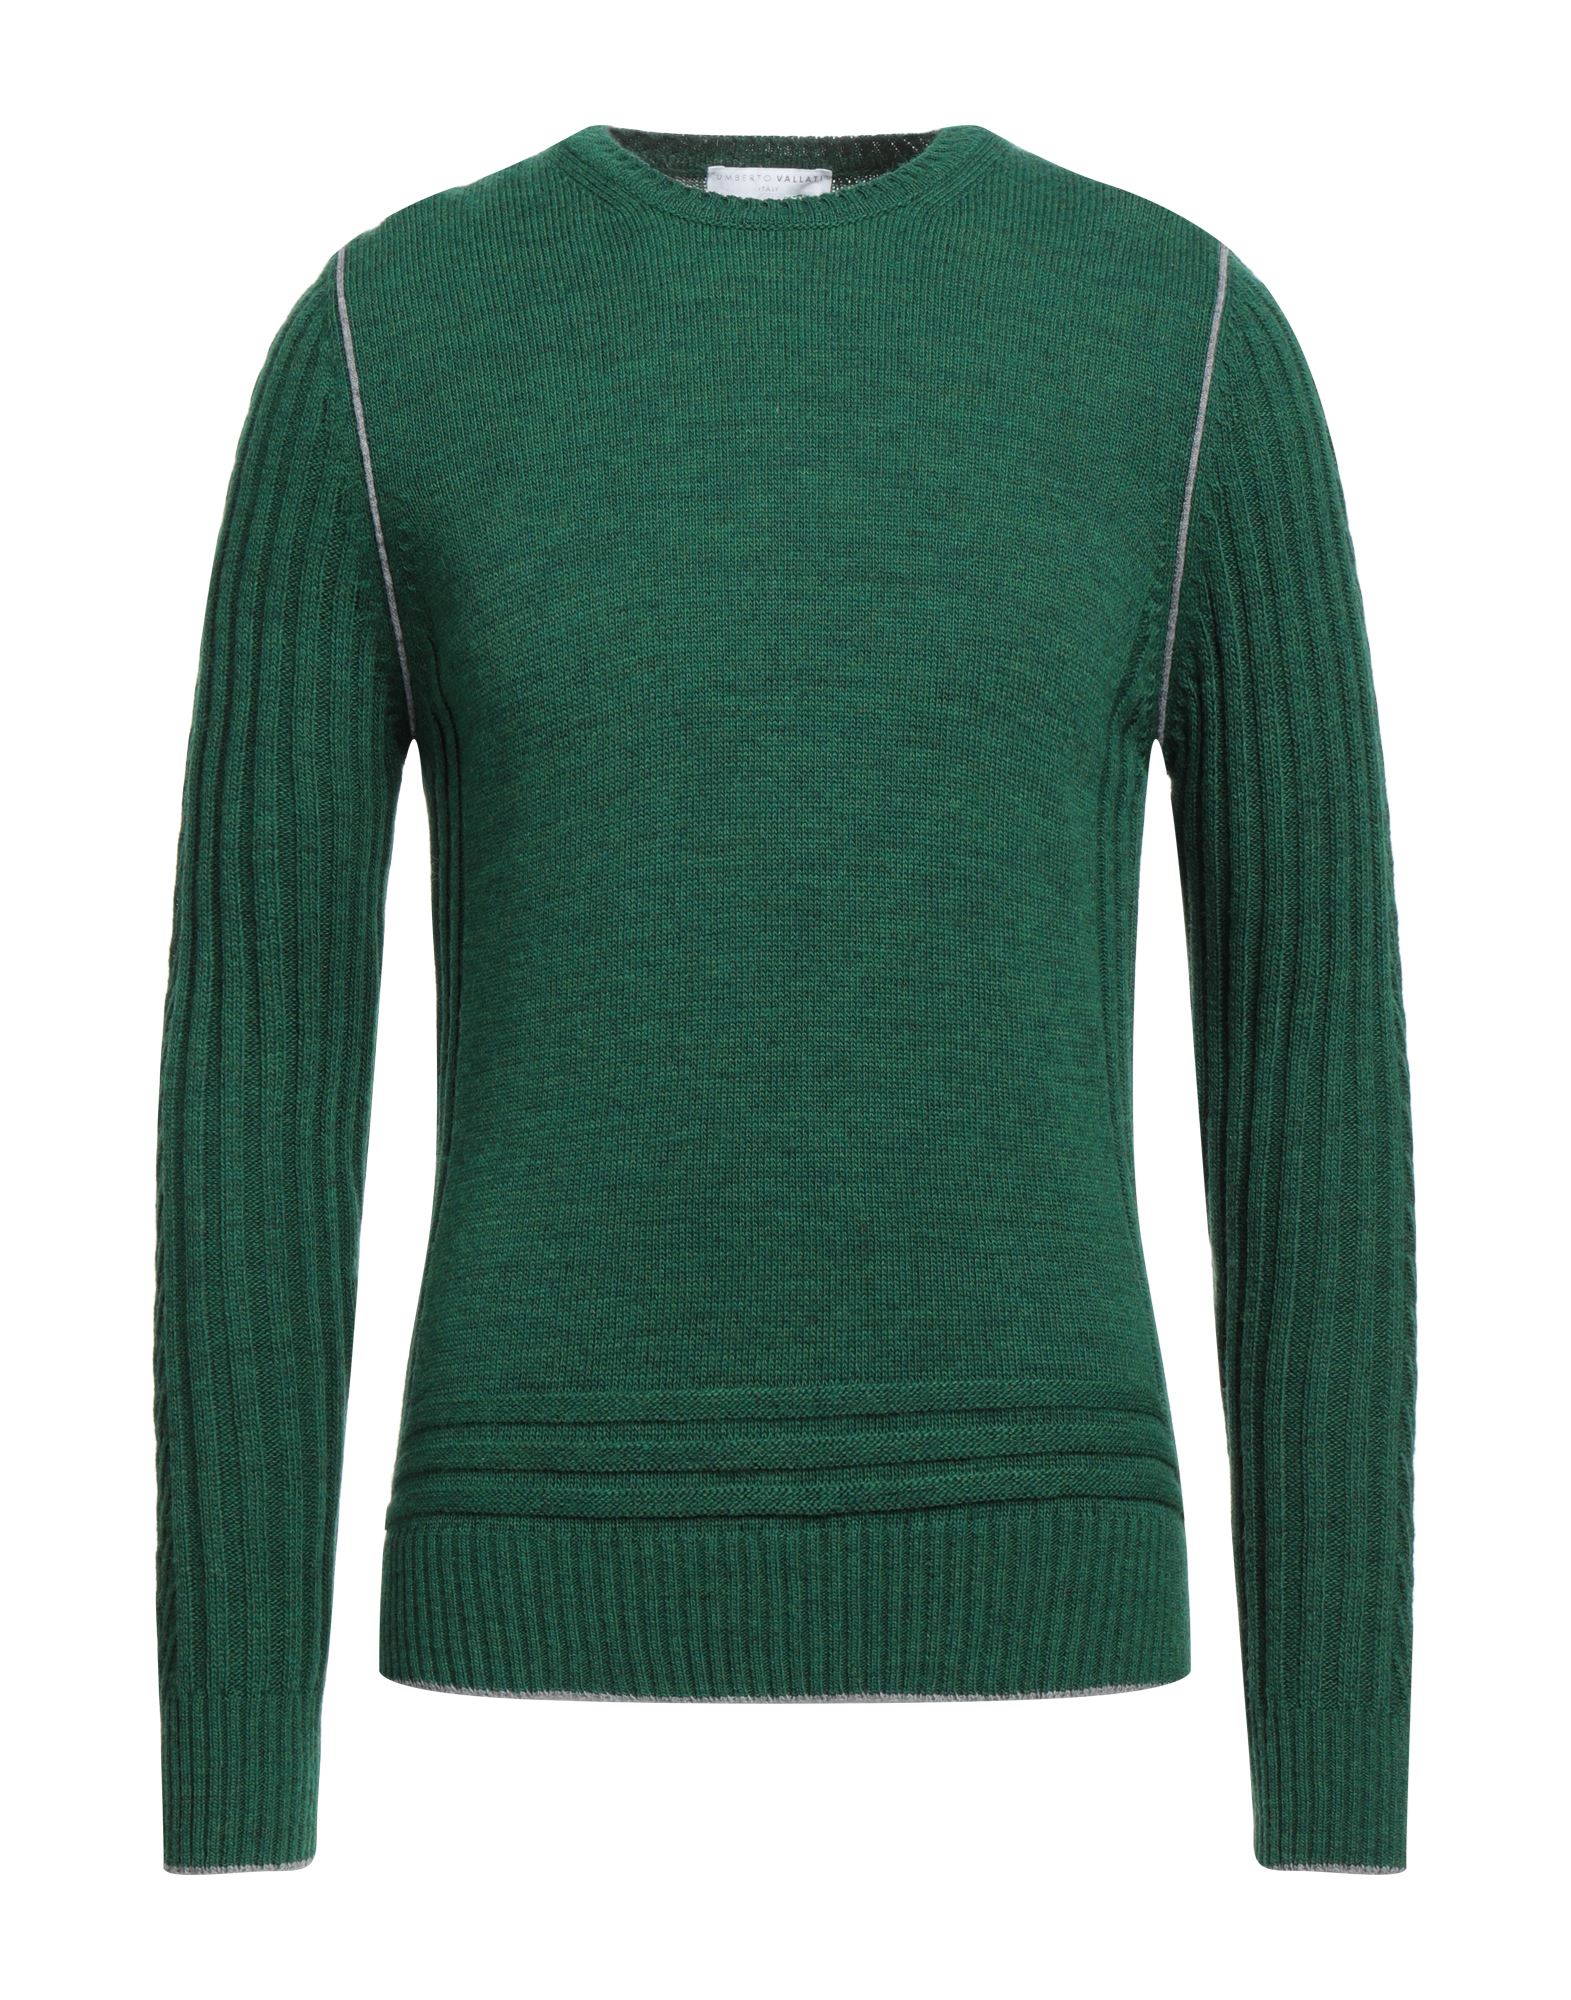 Umberto Vallati Sweaters In Green